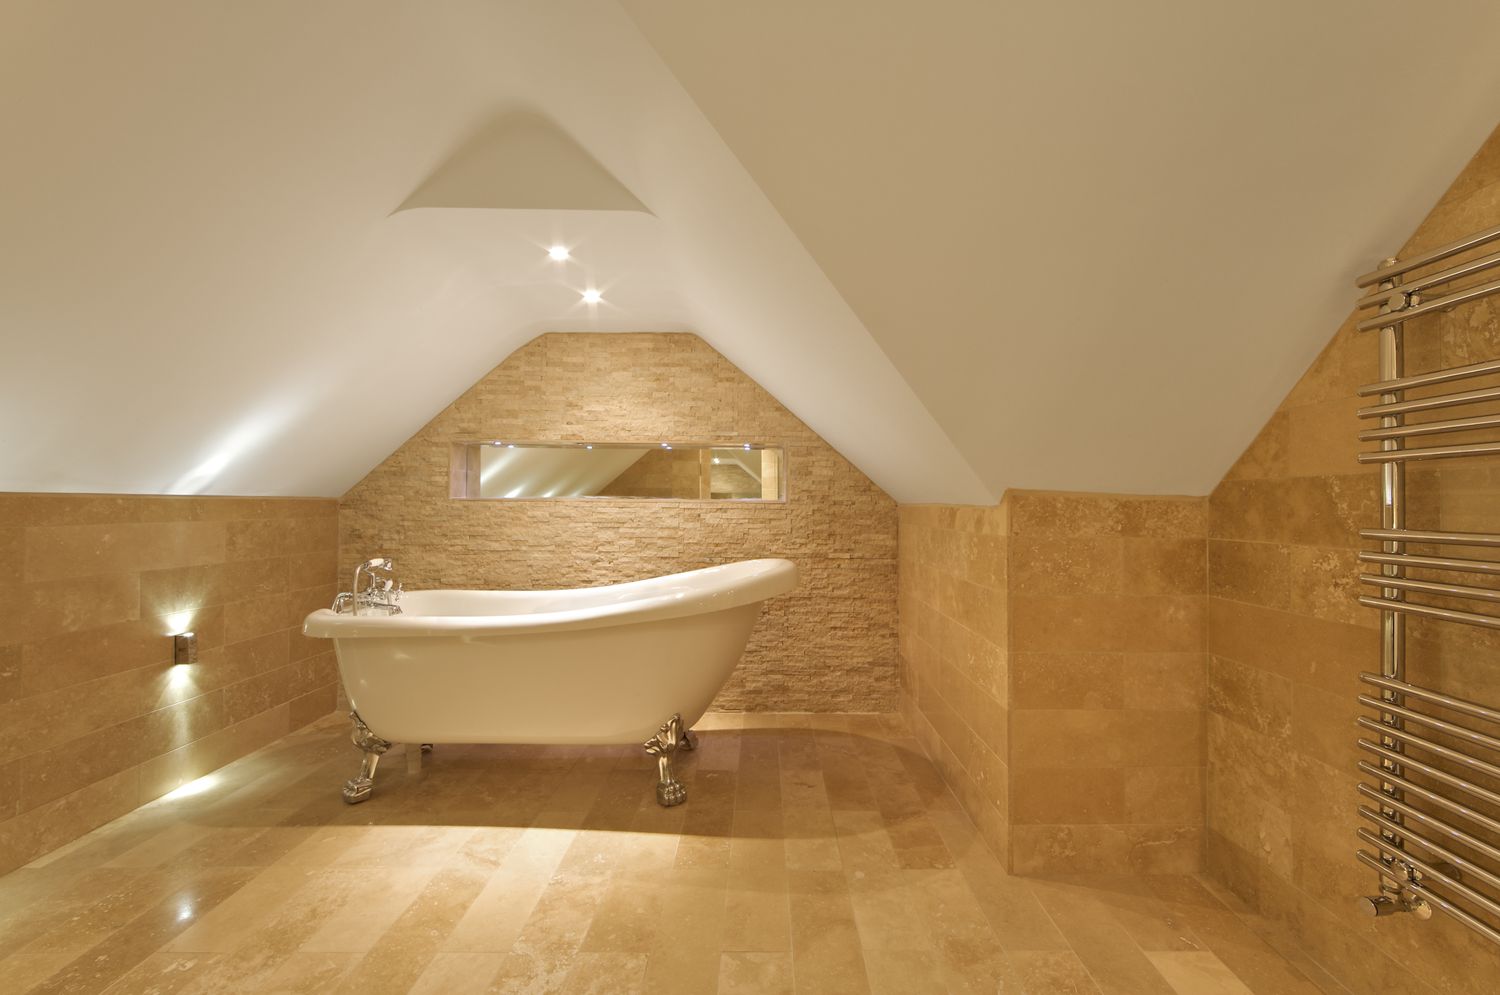 Uma elegante banheira romana no banheiro do sótão, azulejos de mármore no chão e nas paredes, toalheiro moderno